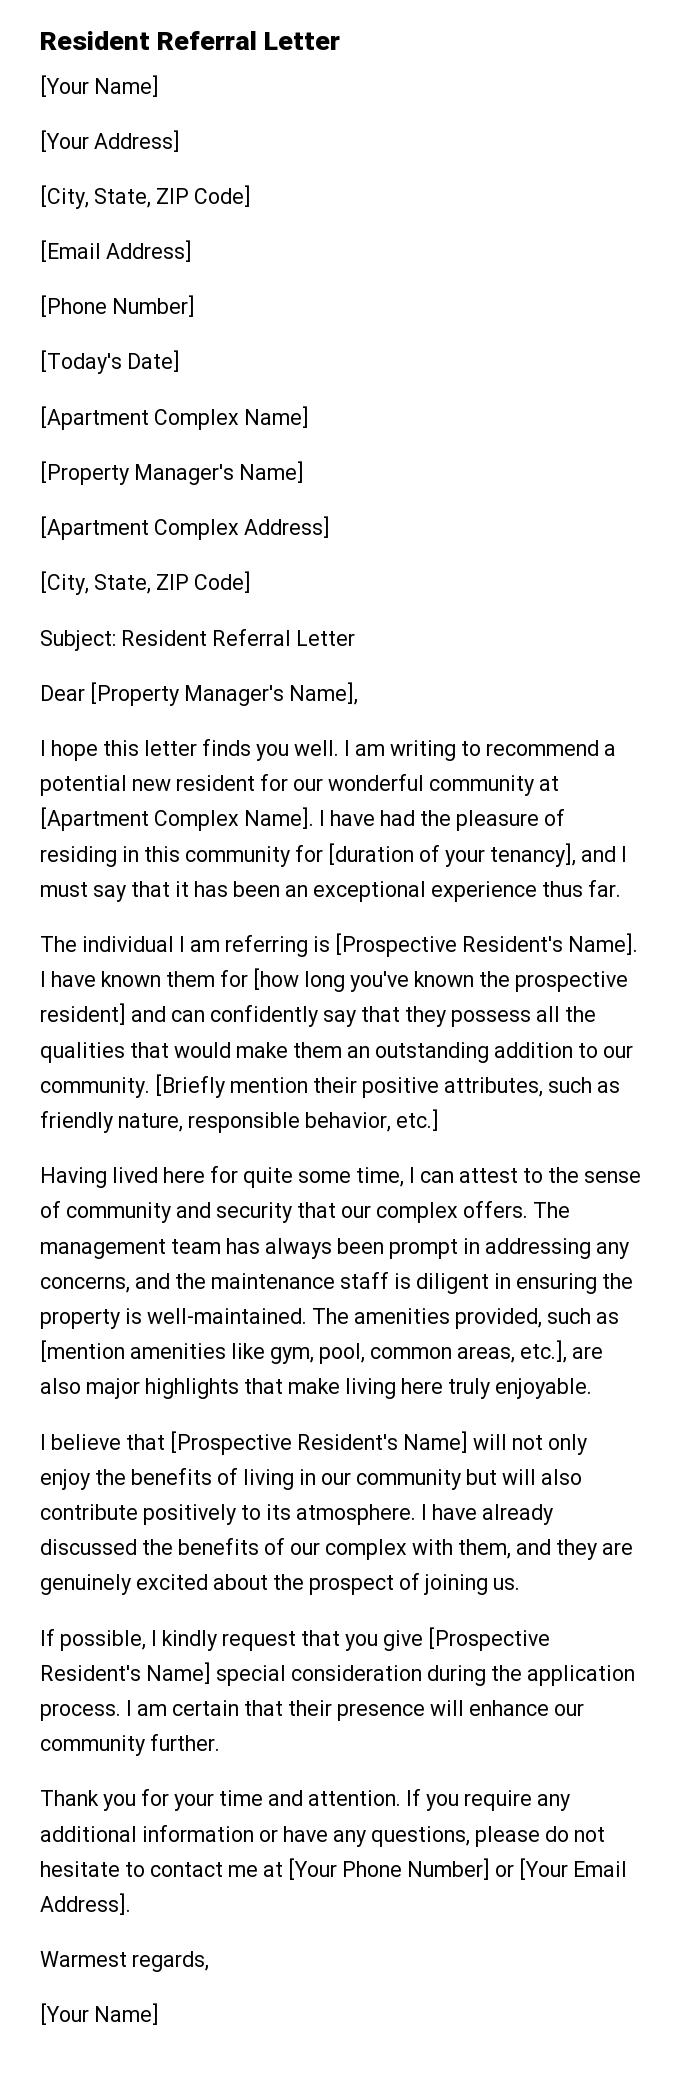 Resident Referral Letter